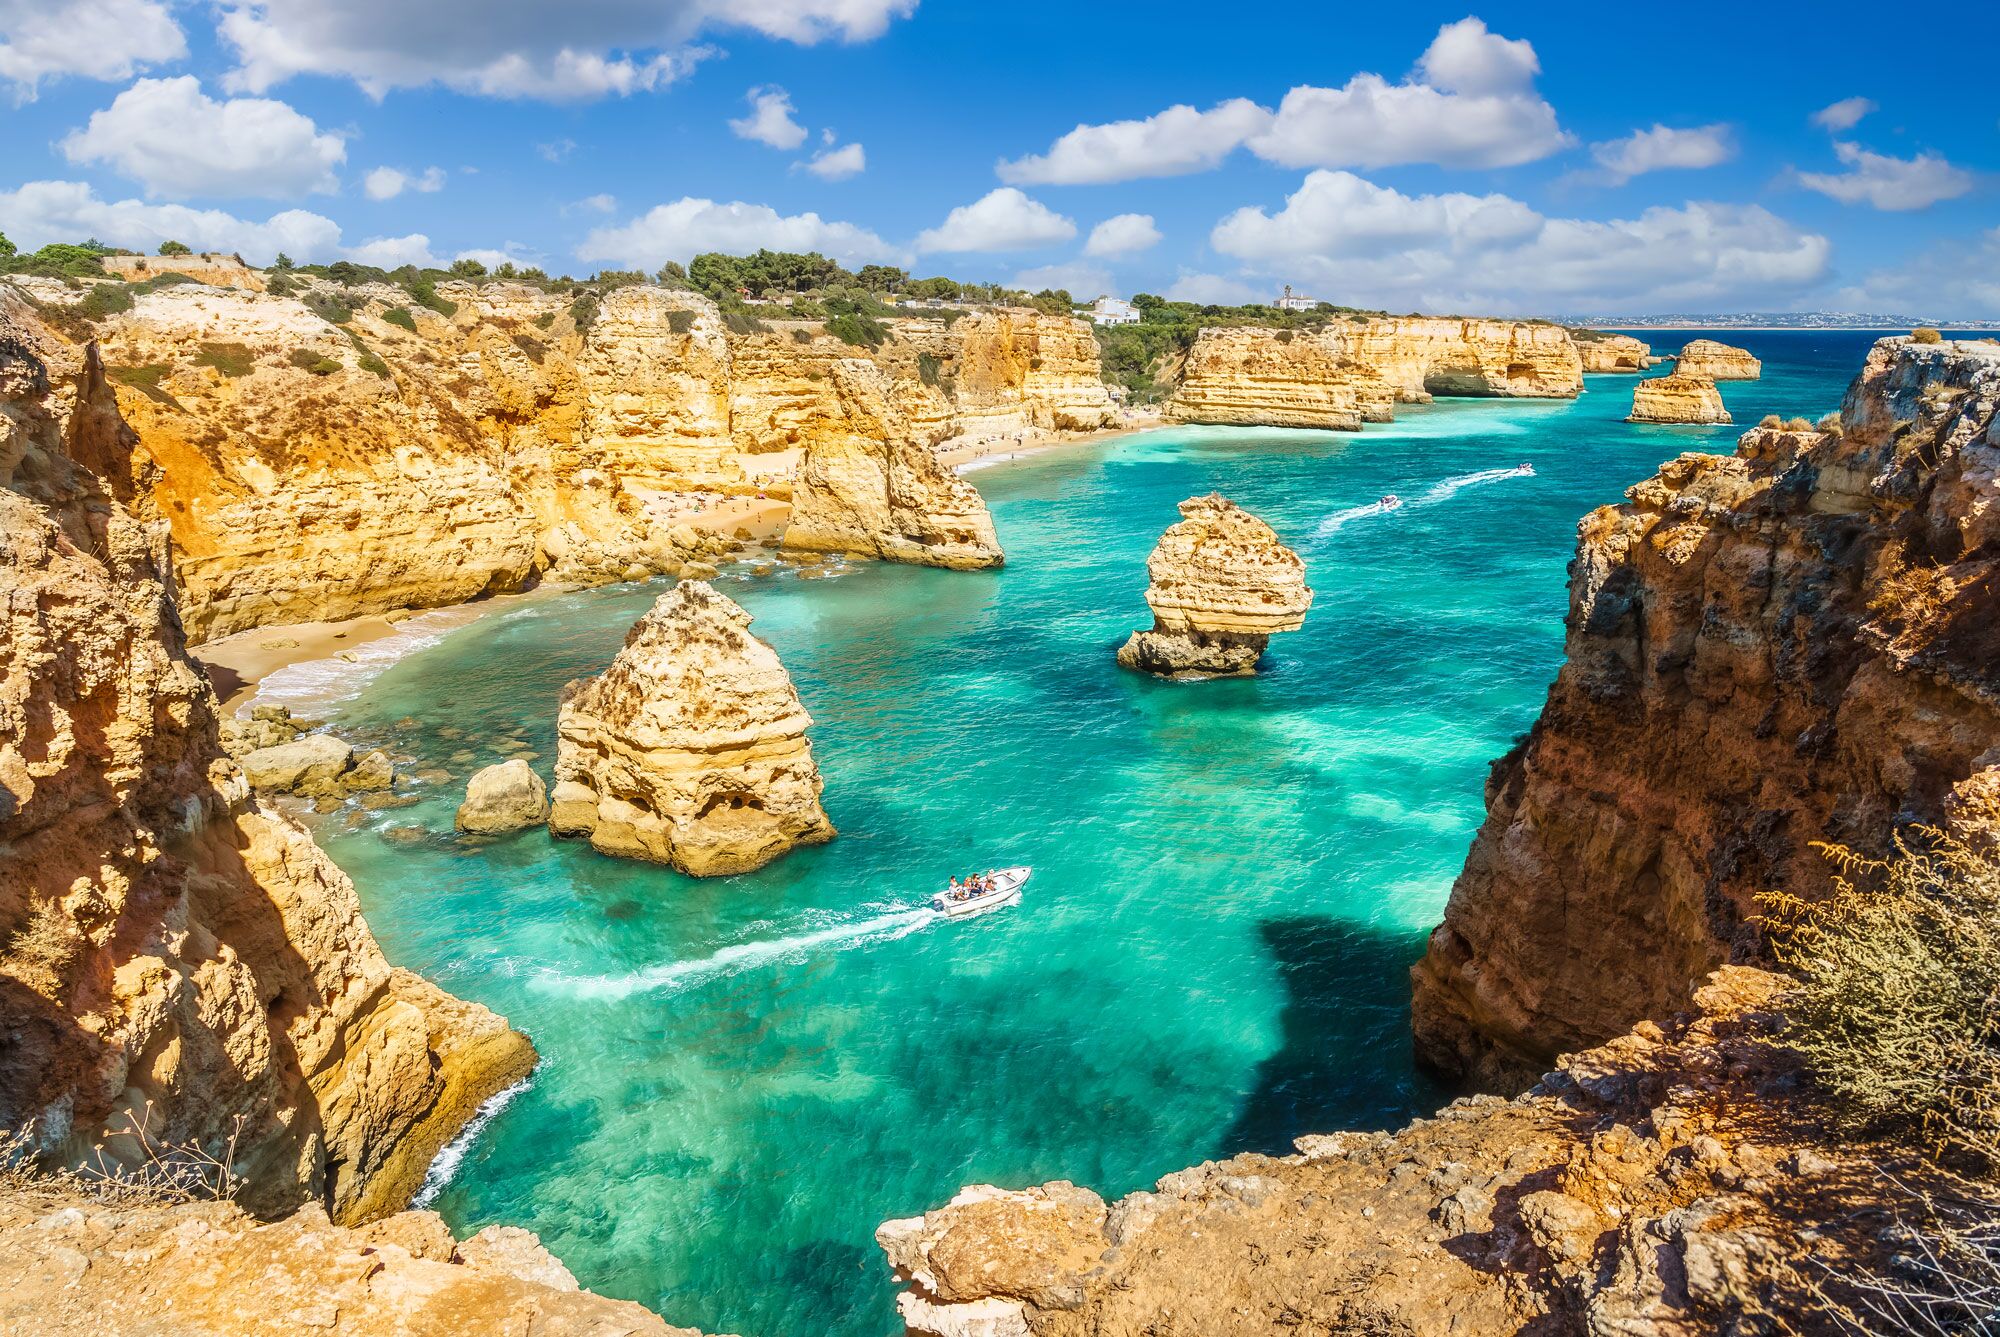 Les meilleurs hôtels et maisons de vacances près des plages de l'Algarve (35 conseils)